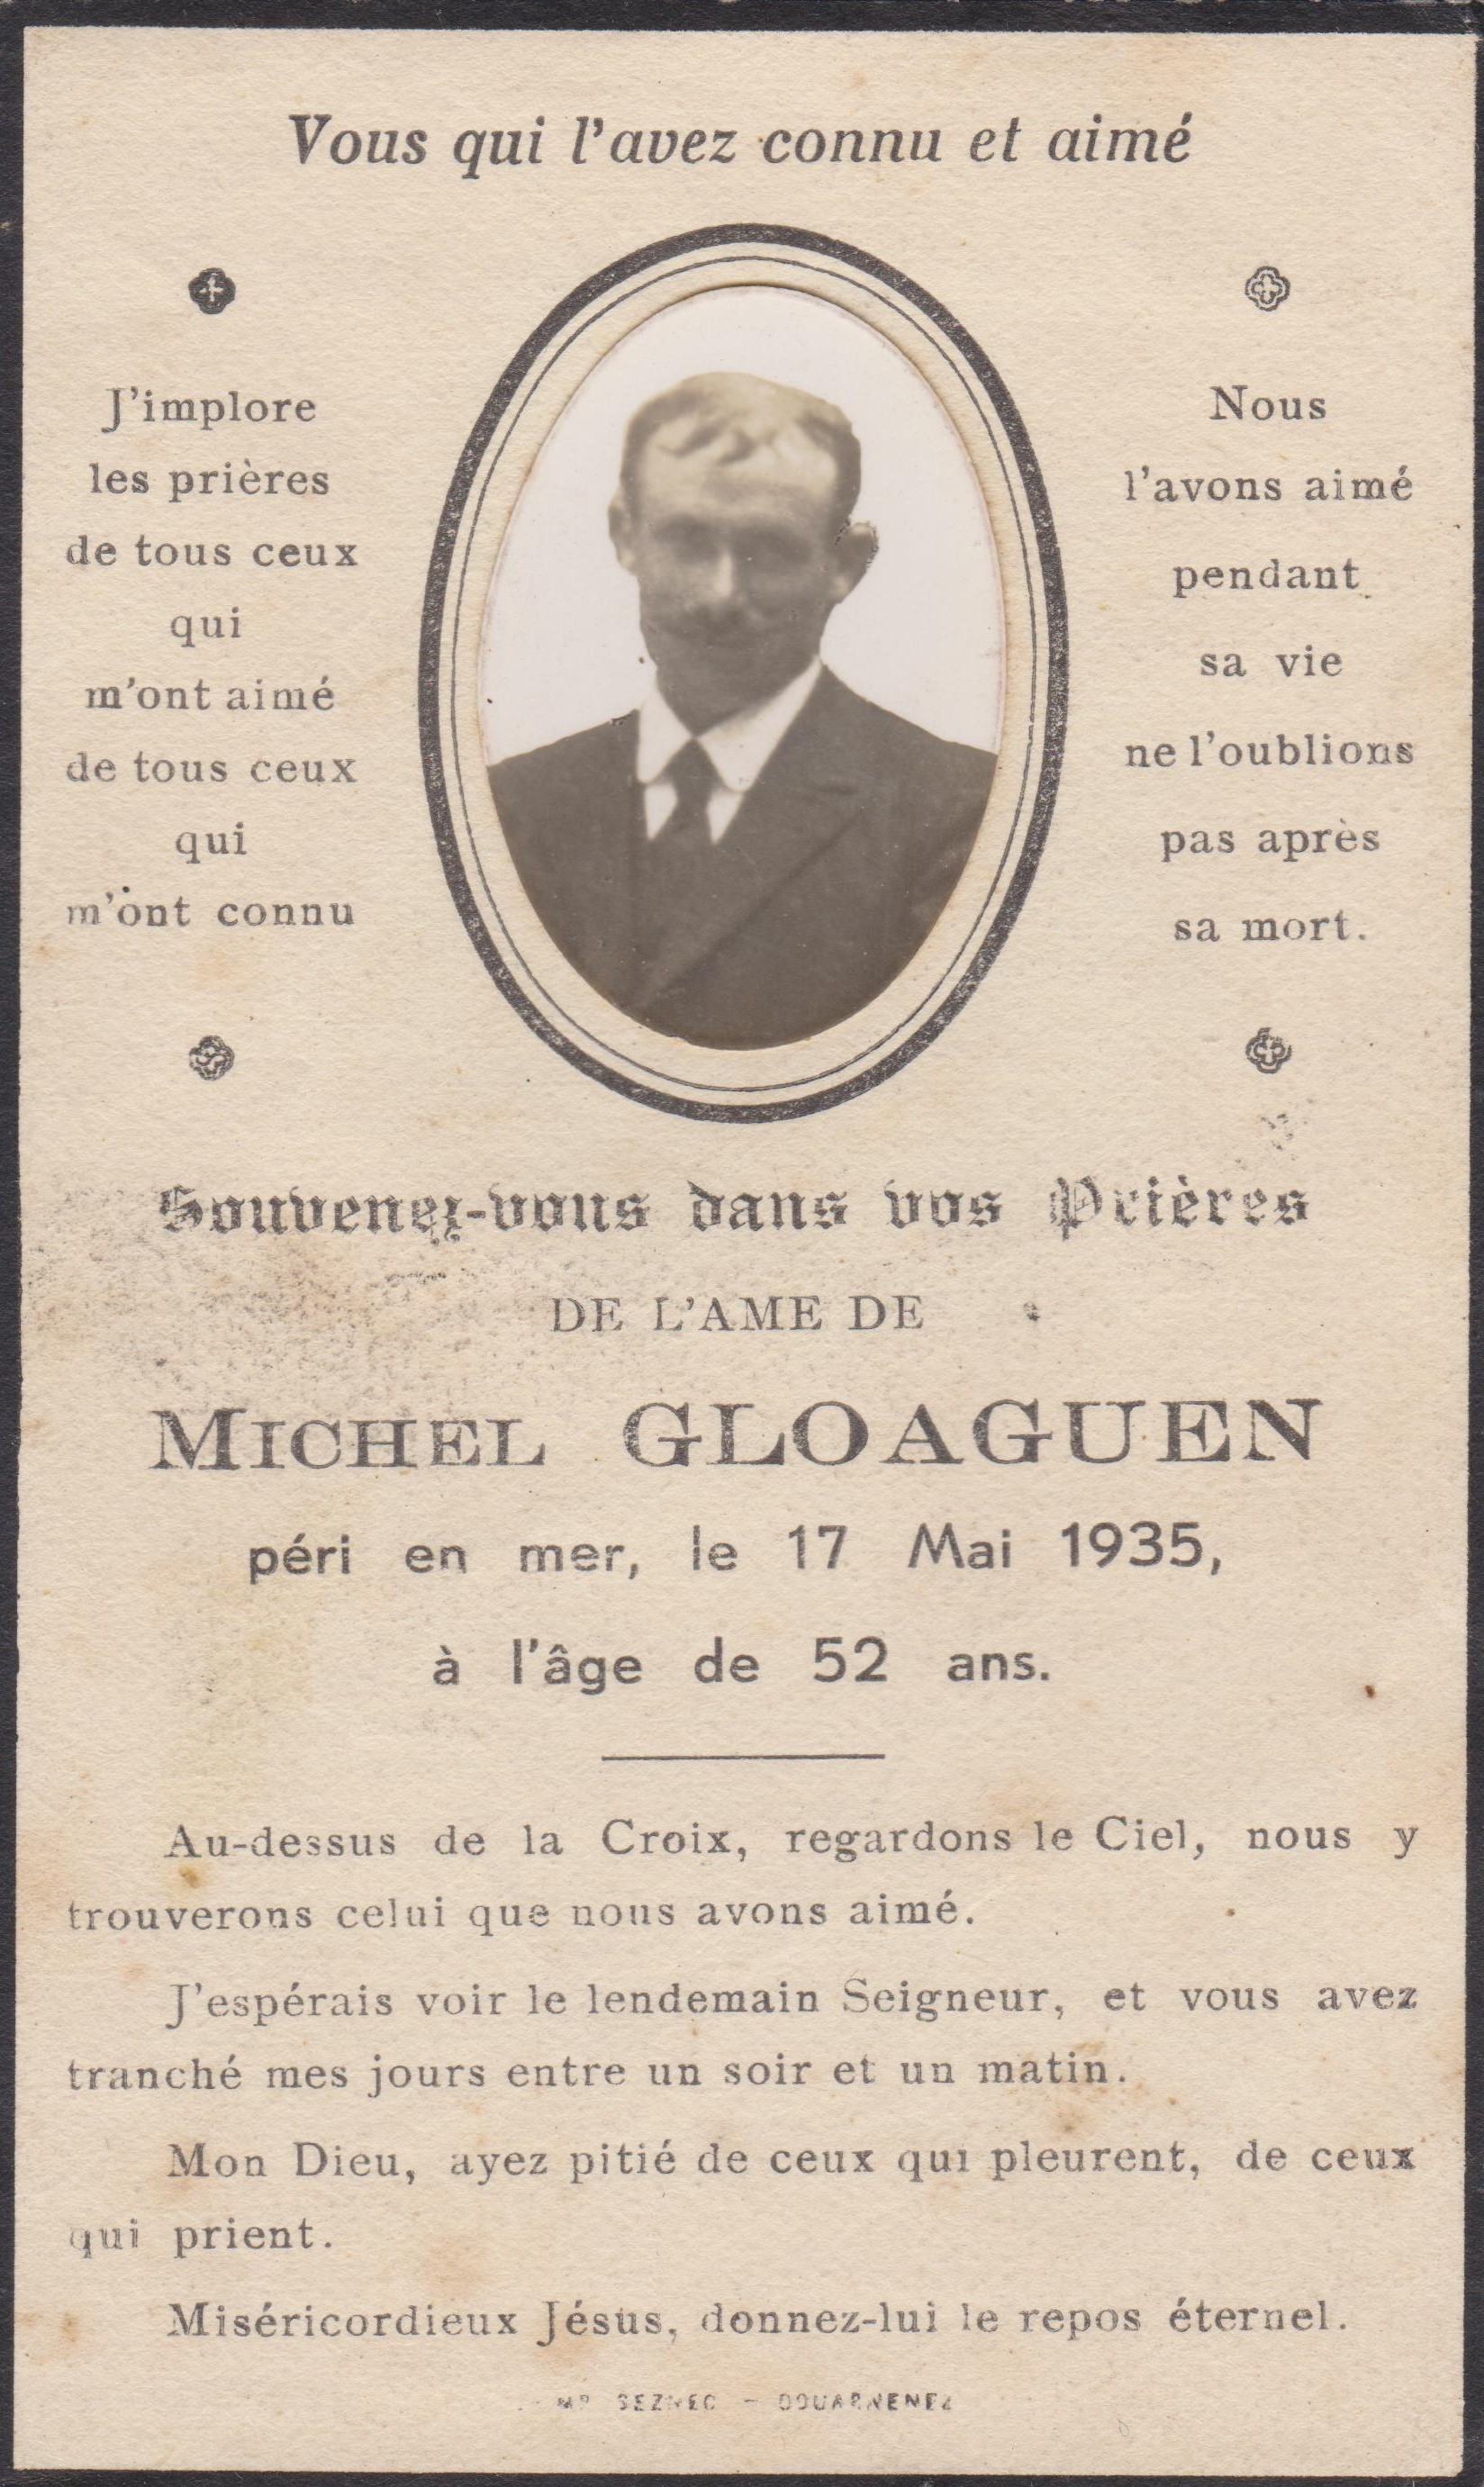 Source : Collection personnelle de Jacques Join - Michel Gloaguen, patron de la pinasse "Marie-Thérèse", DZ 3108, péri en mer le 17 mai 1935 à bord du sloop ponté "Sainte-Anne", DZ 2895